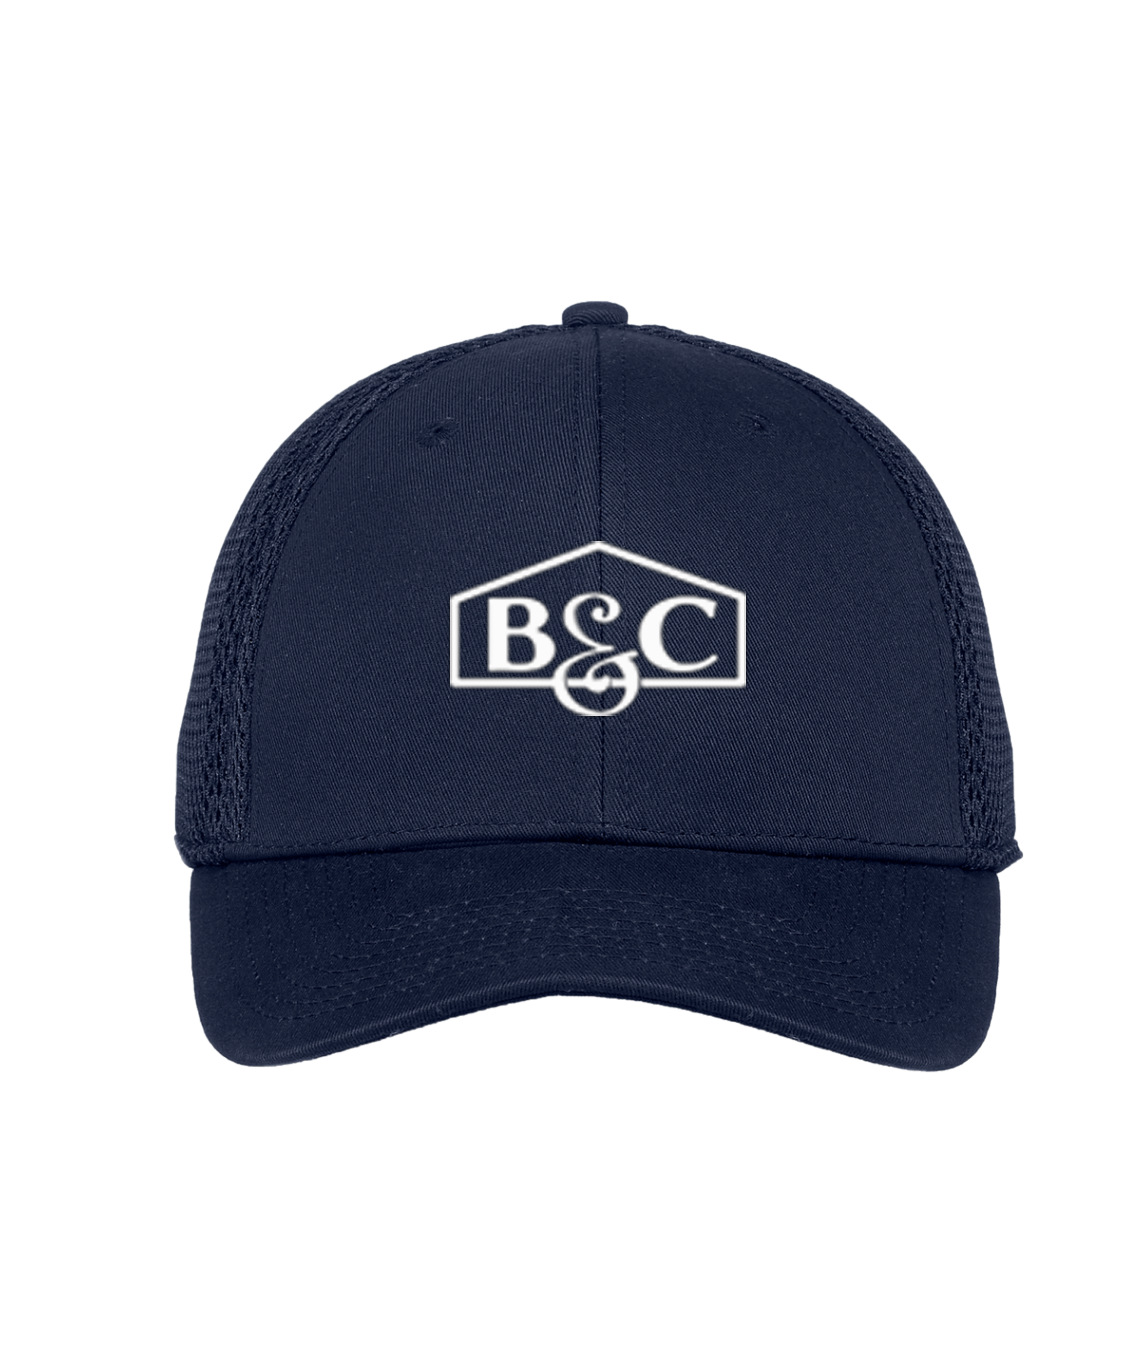 B&C - New Era® - Adjustable Structure Cap